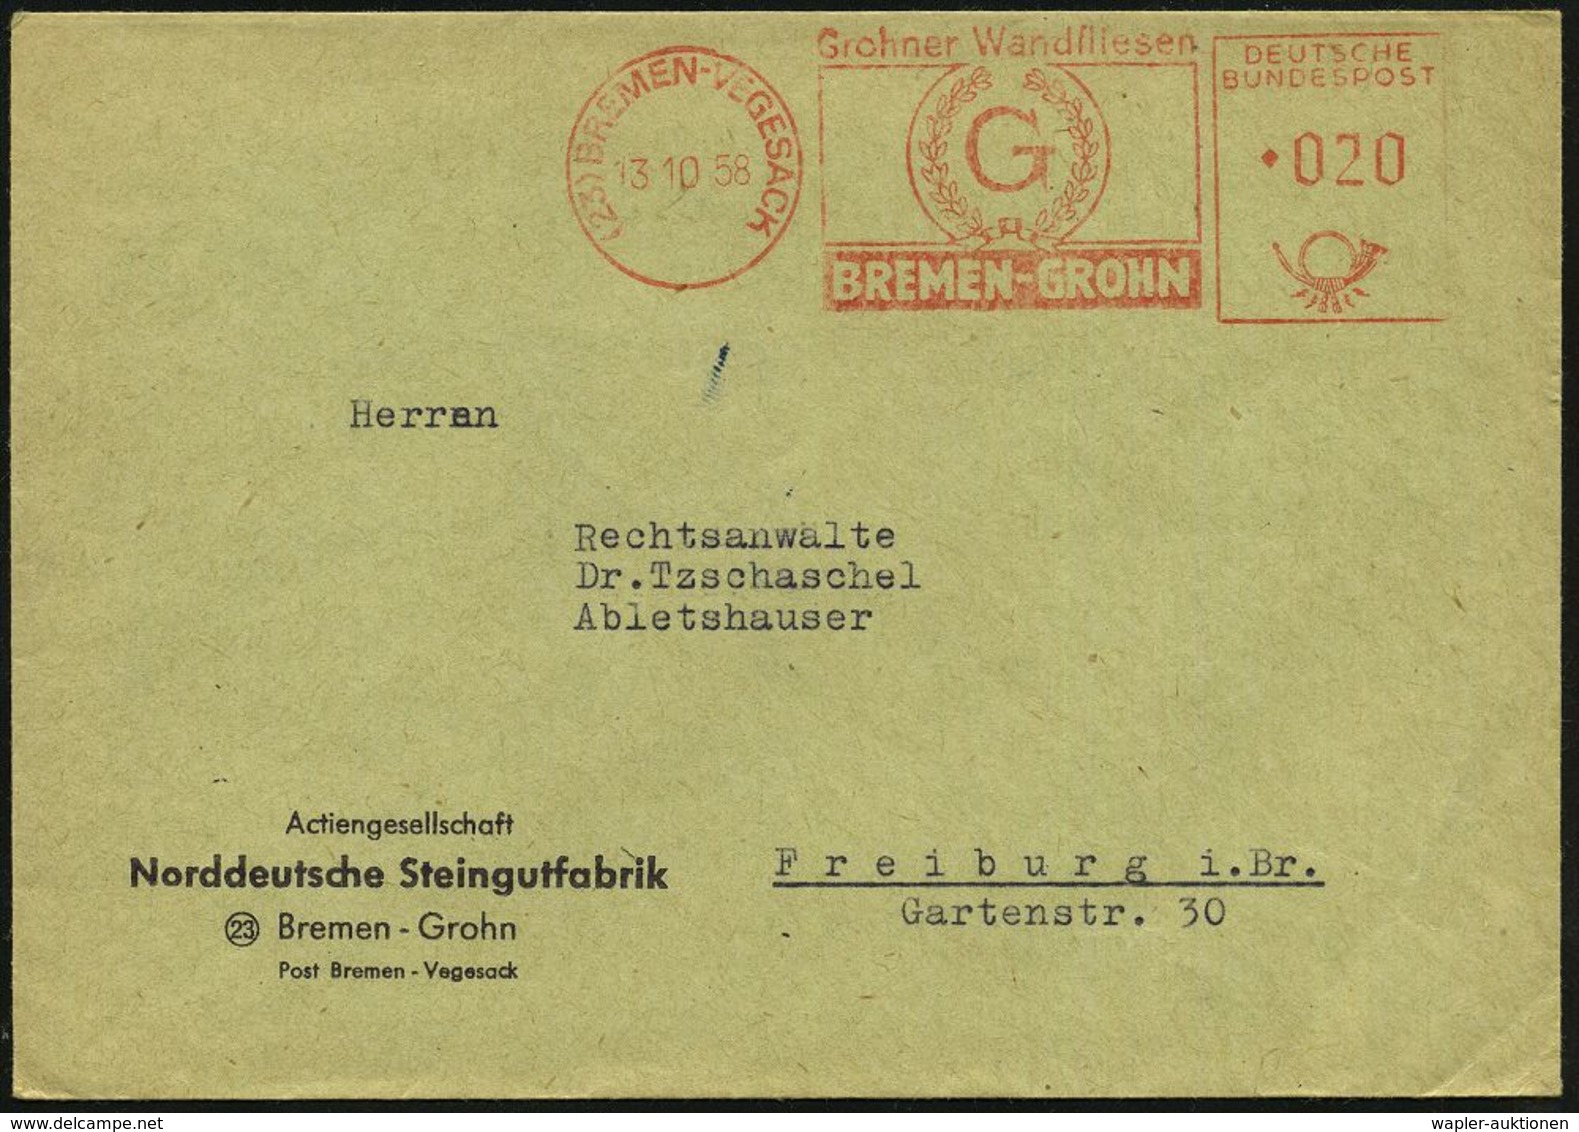 TON / STEINGUT / KACHELOFEN : (23) BREMEN-VEGESACK/ Grohner Wandfliesen 1958 (13.10.) AFS (Logo) Firmen-Bf: Norddeutsche - Porzellan